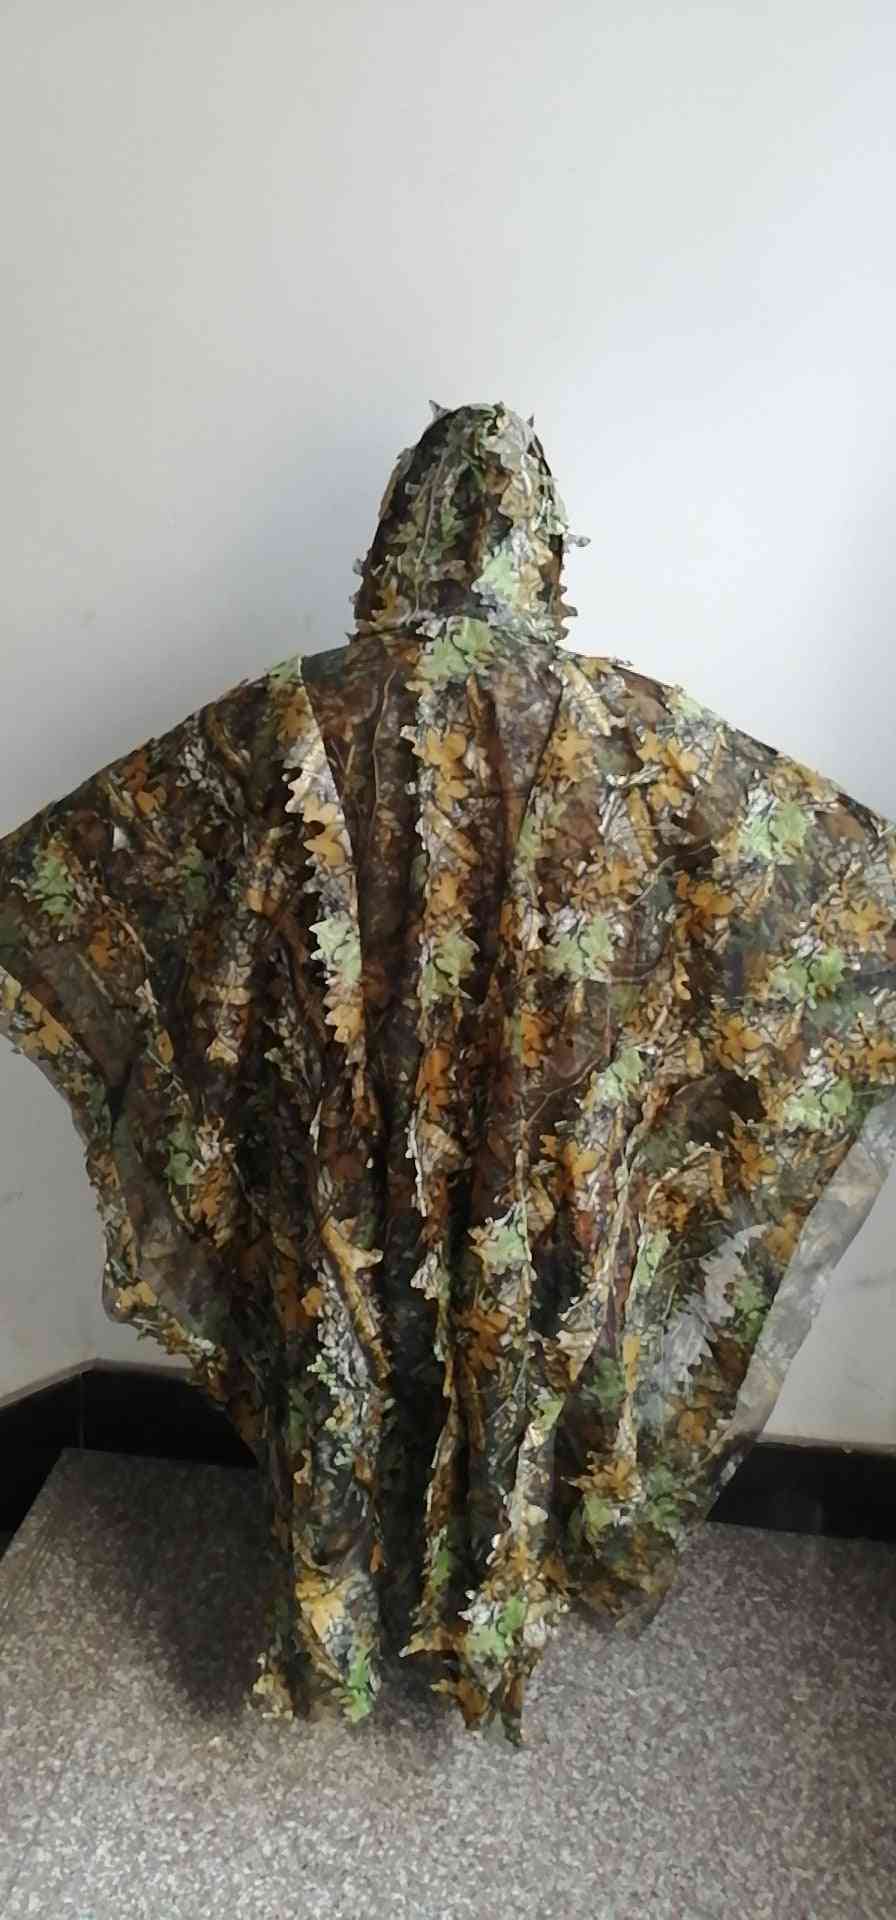 Löviga poncho djungel ghillie kostymer, jakt kamouflage 3d bioniskt blad, mesh för add uttons mer bekvämt